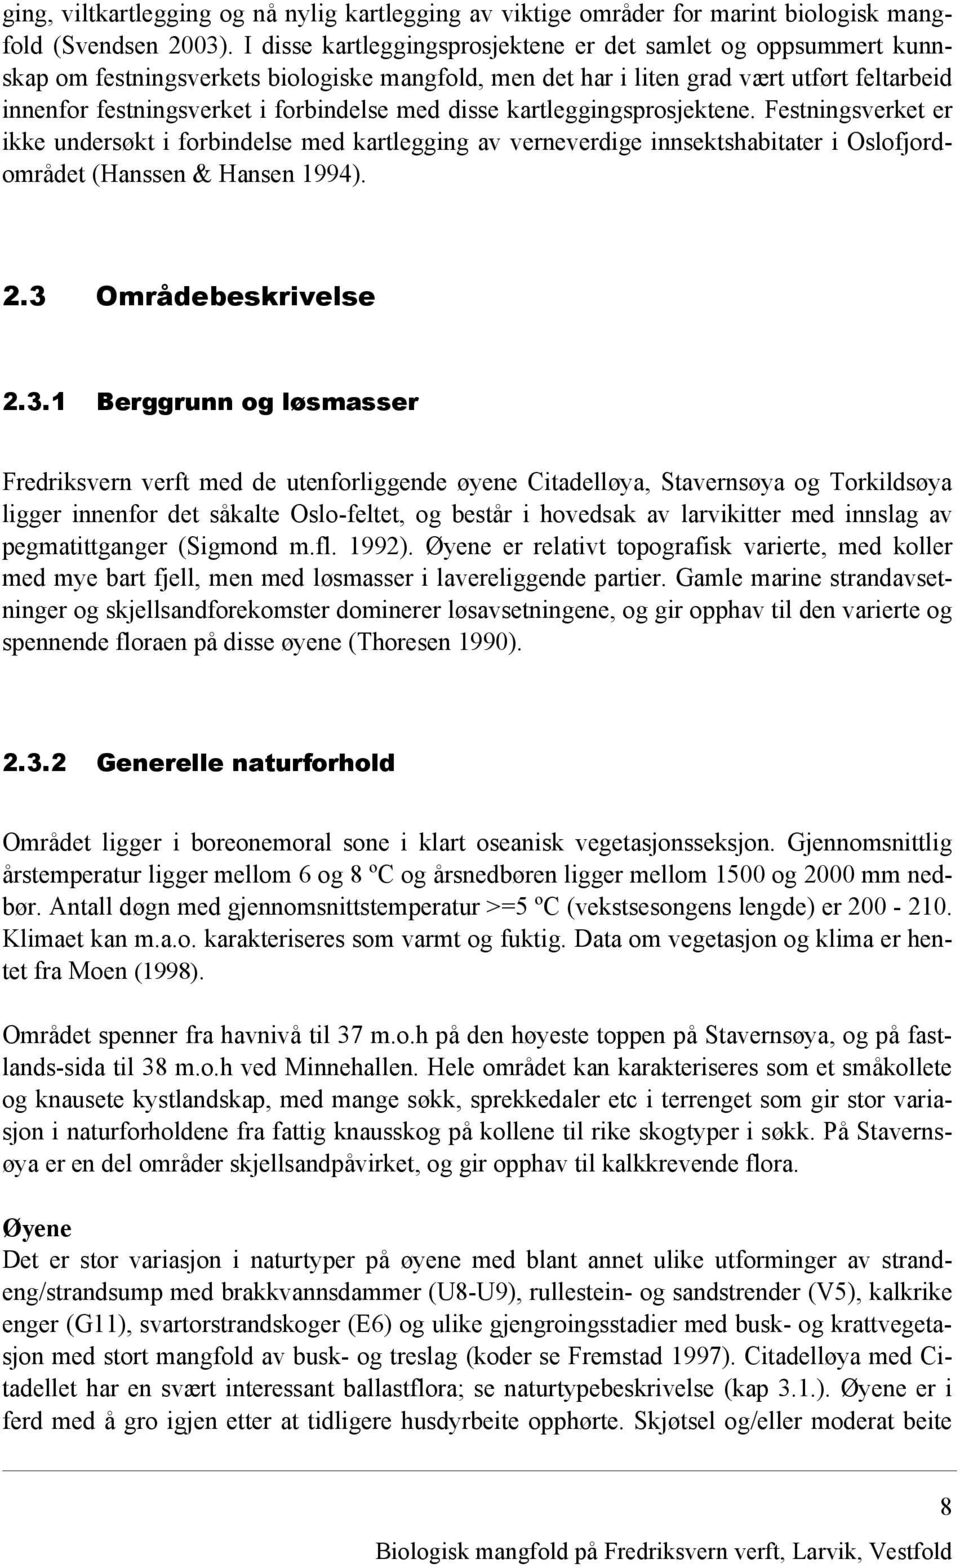 med disse kartleggingsprosjektene. Festningsverket er ikke undersøkt i forbindelse med kartlegging av verneverdige innsektshabitater i Oslofjordområdet (Hanssen & Hansen 1994). 2.